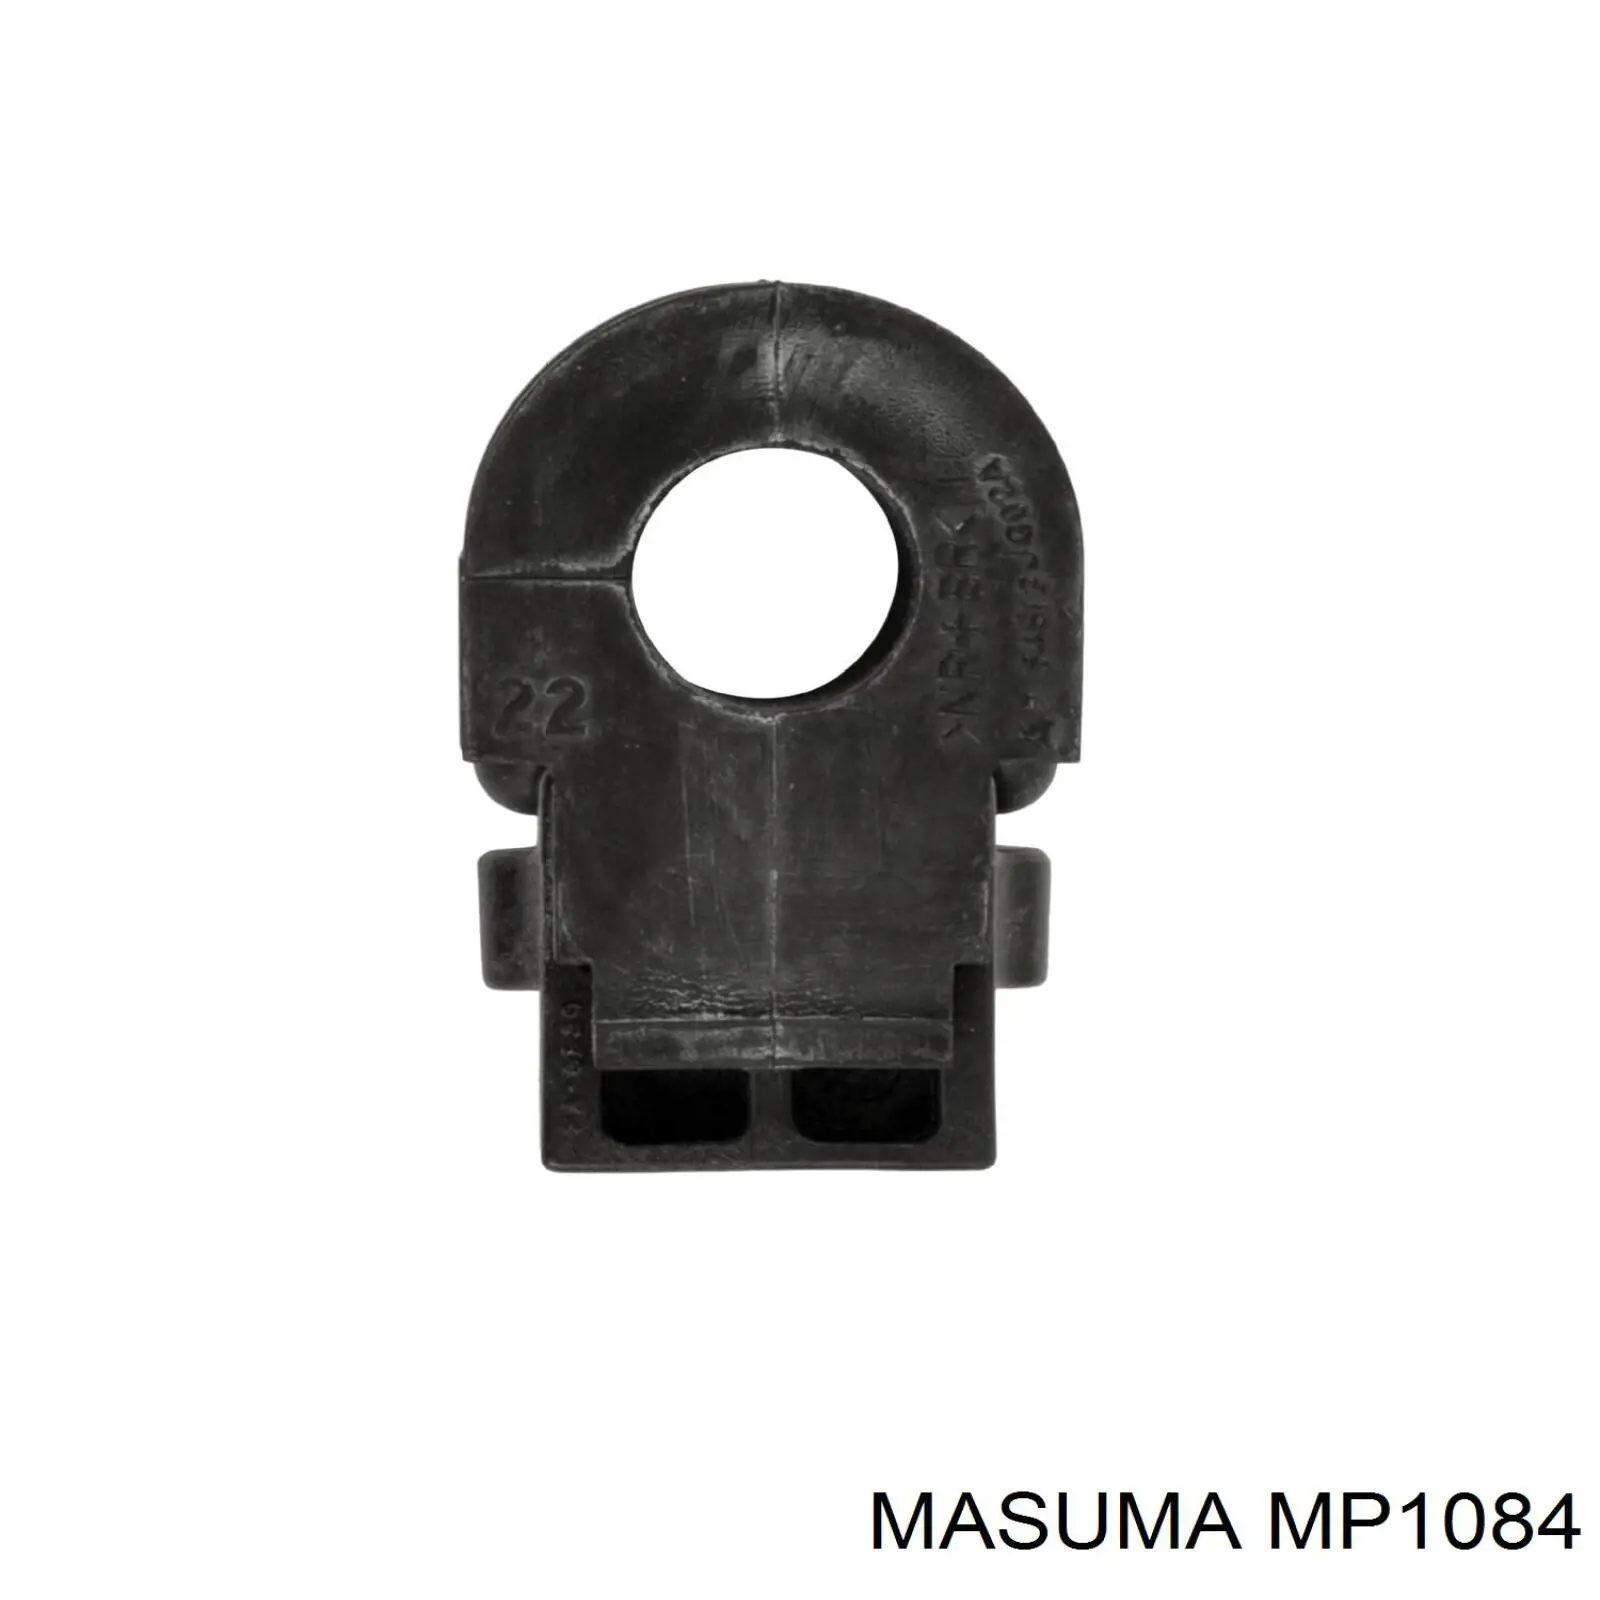 MP1084 Masuma casquillo de barra estabilizadora delantera